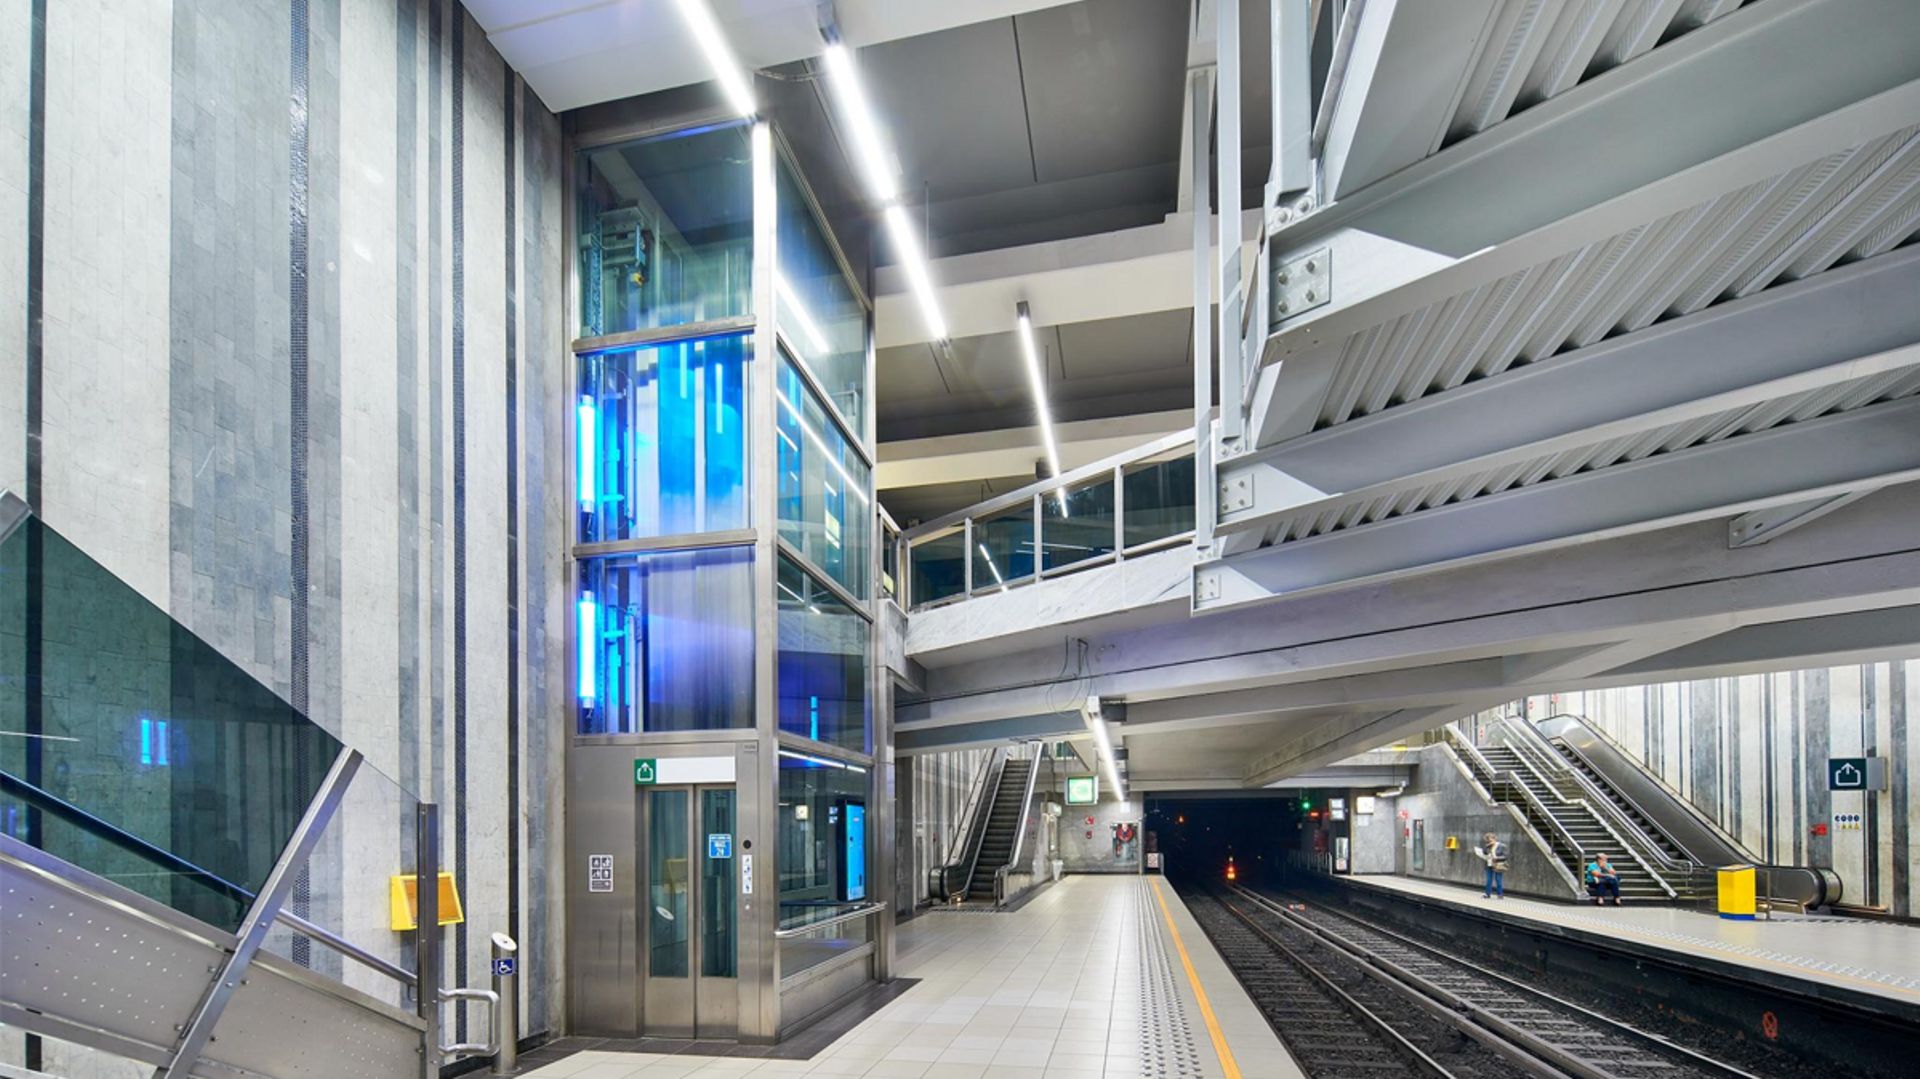 La station de métro Roodebeek offrira une meilleure accessibilité aux personnes à mobilité réduite